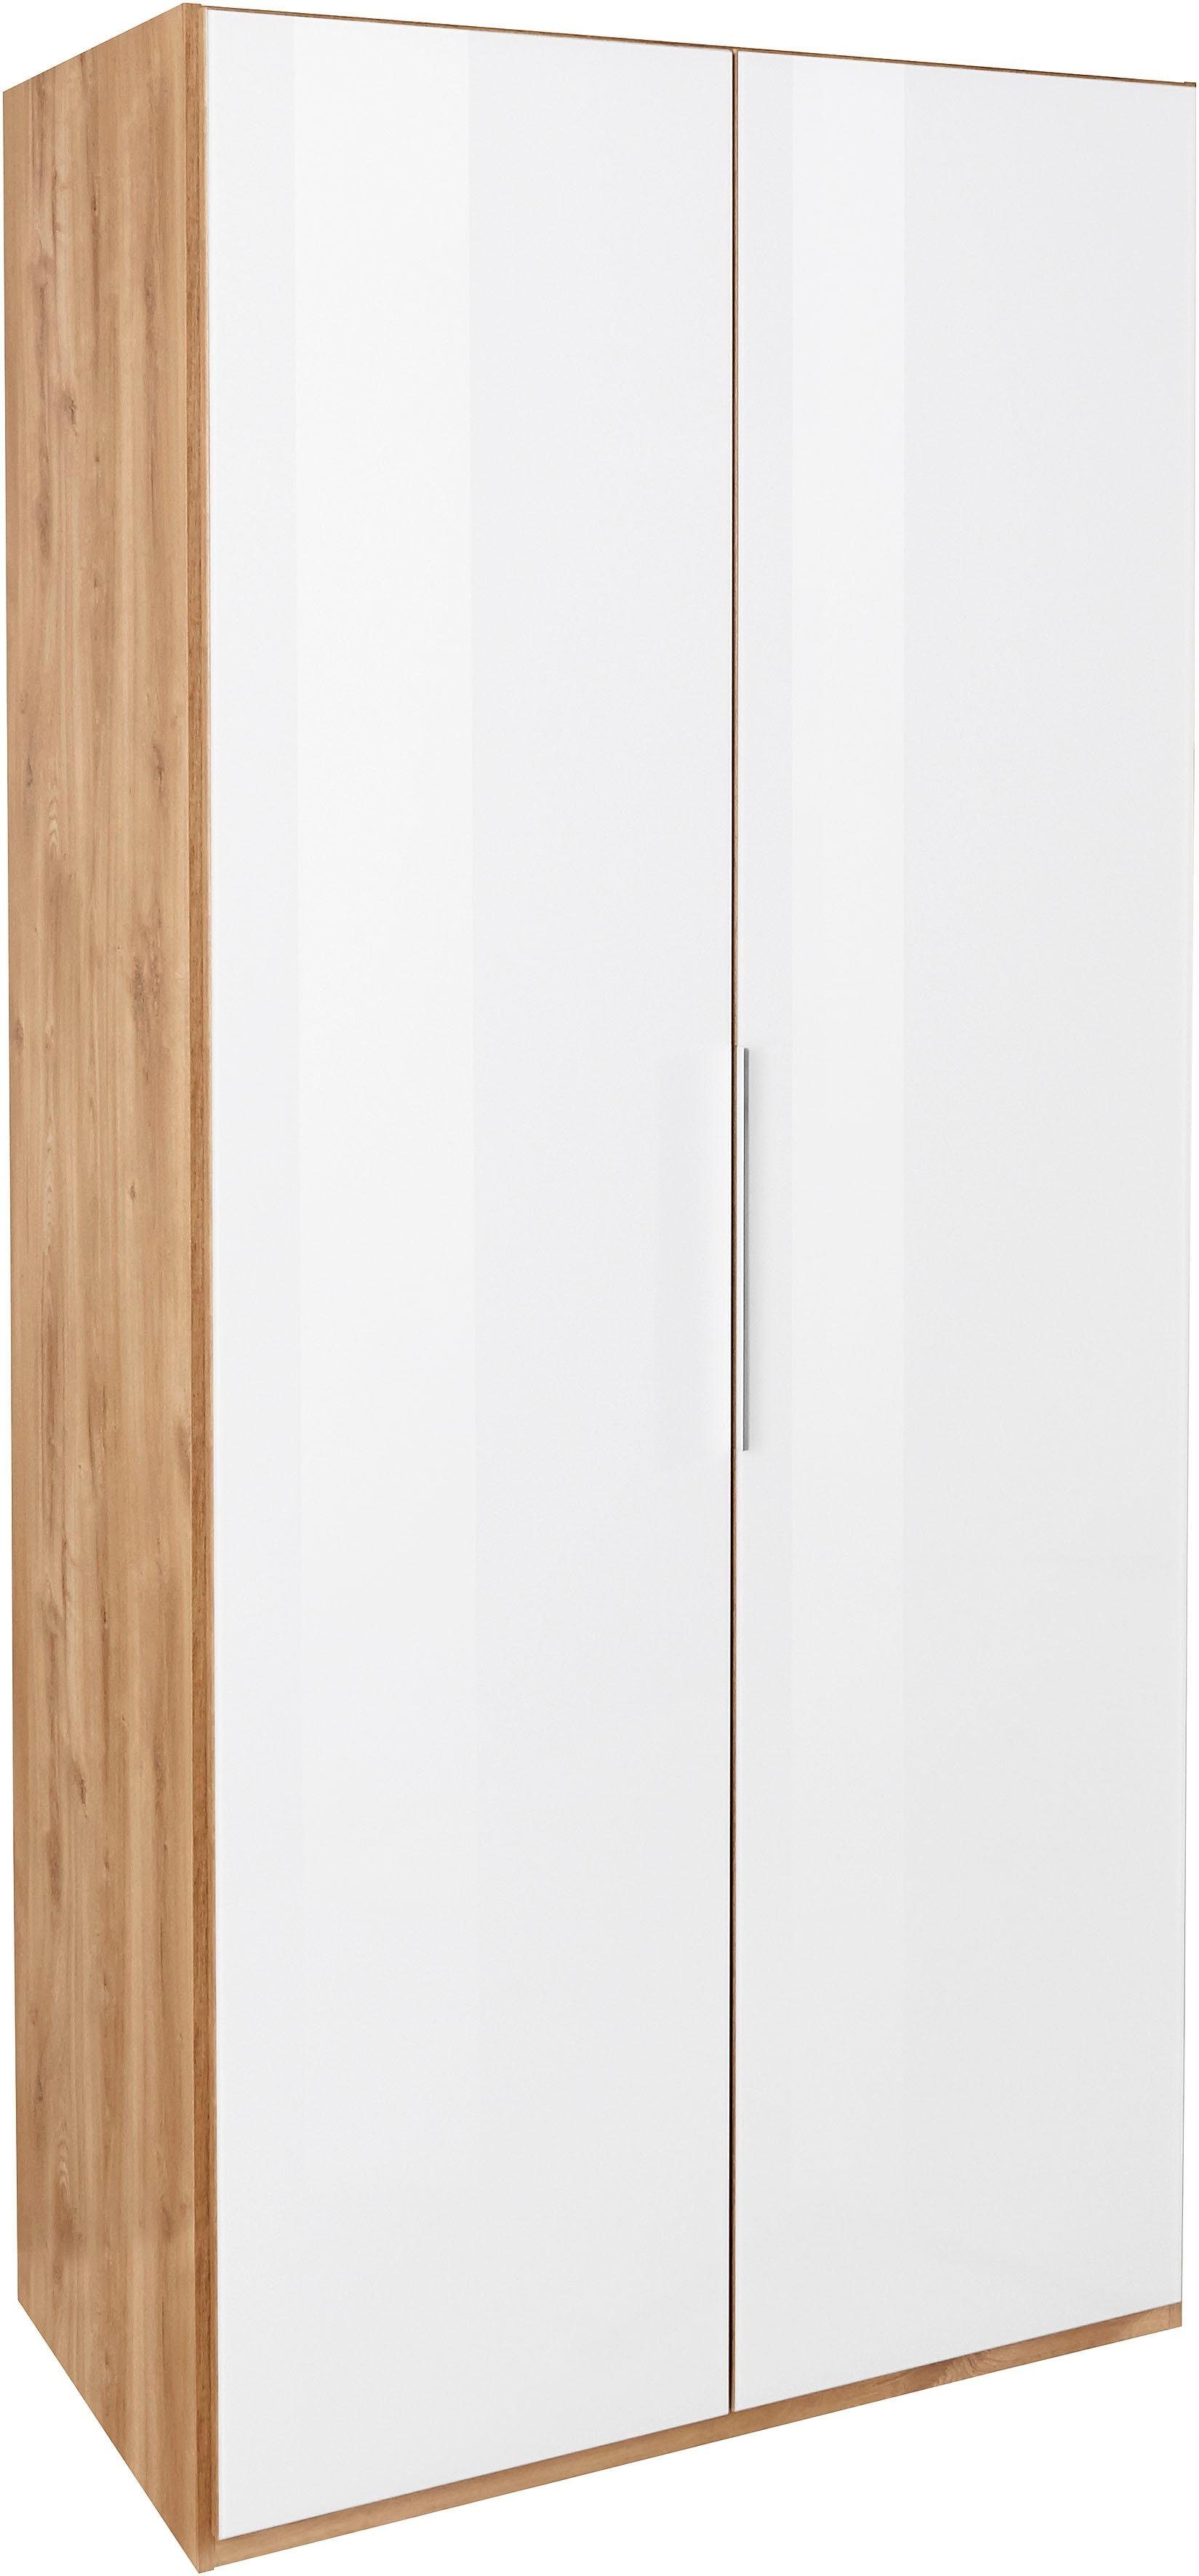 Fresh To Go Kleiderschrank Level plankeneichefarben/Weißglas Glas vollflächig Türen mit farbigem